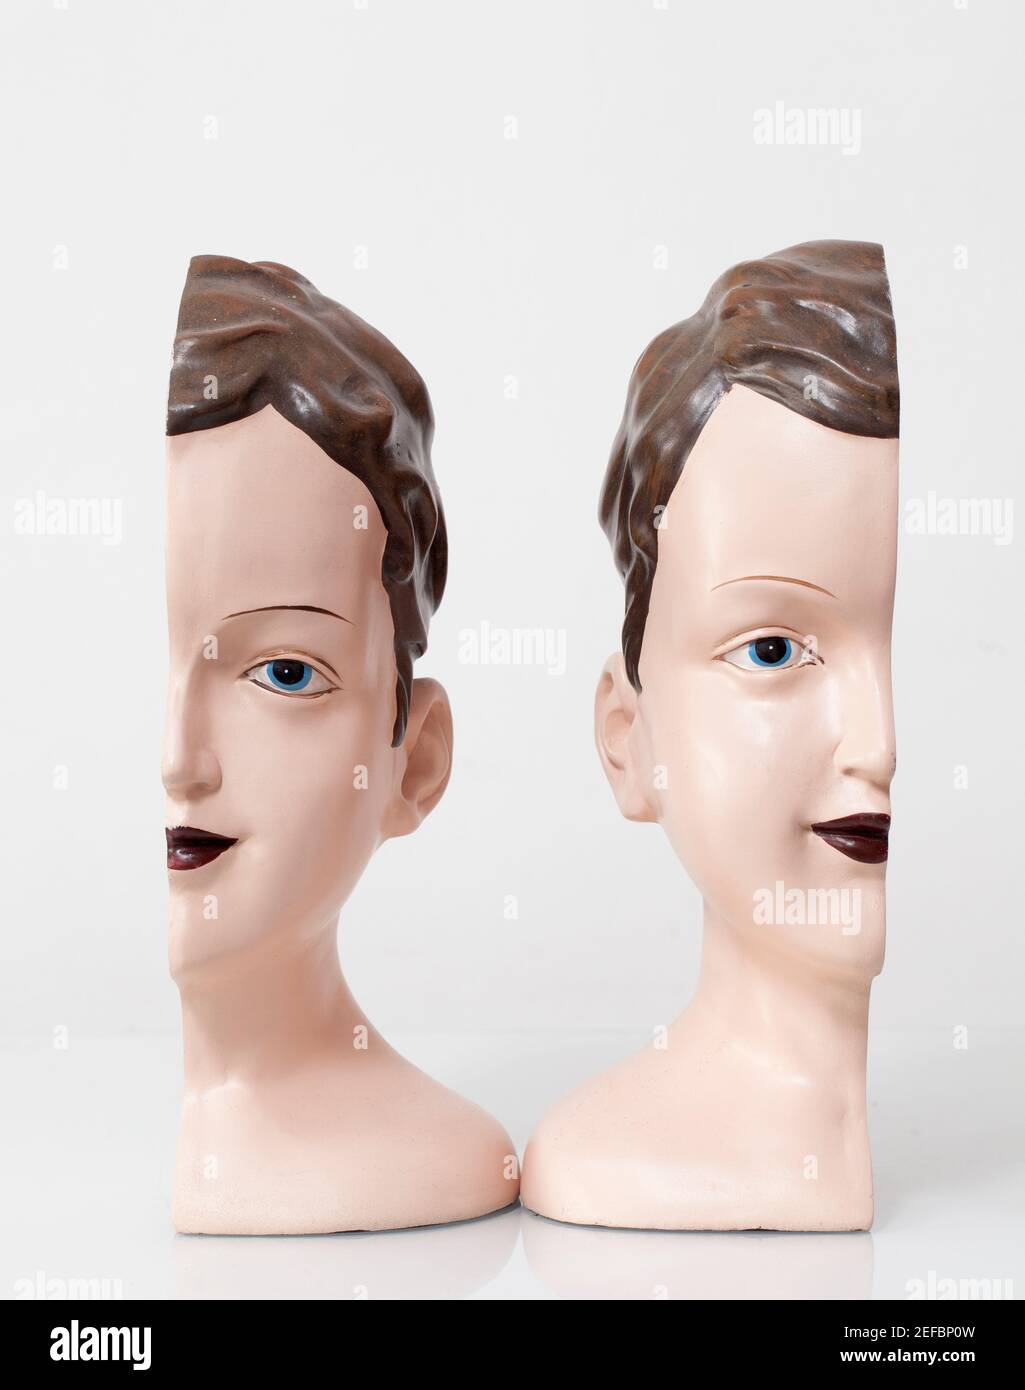 Männlicher Kopf Modell Mannequin Gesicht Figur Stockfoto